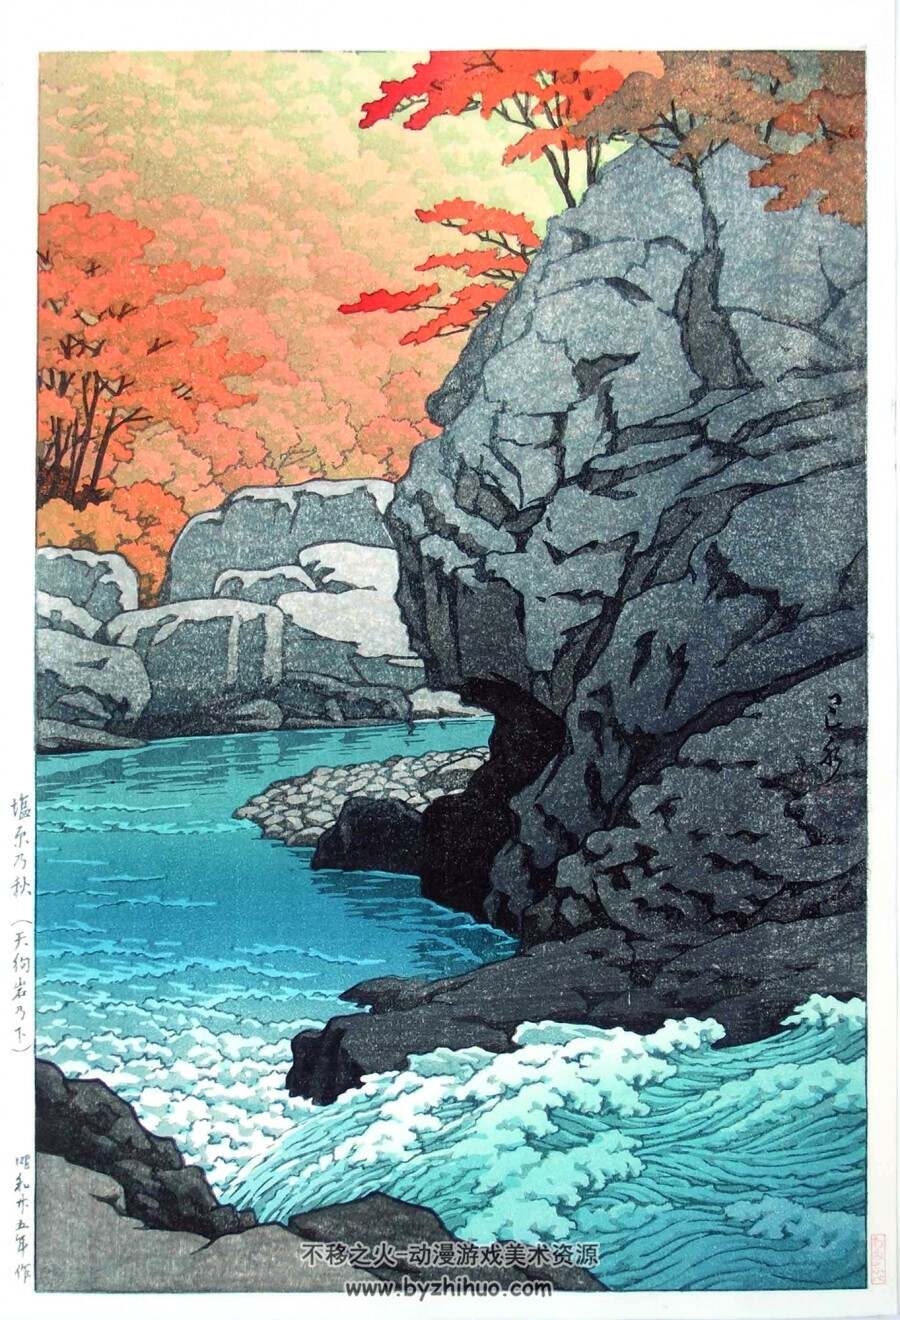 日本版画 川濑巴水 传统绘画作品 百度网盘下载